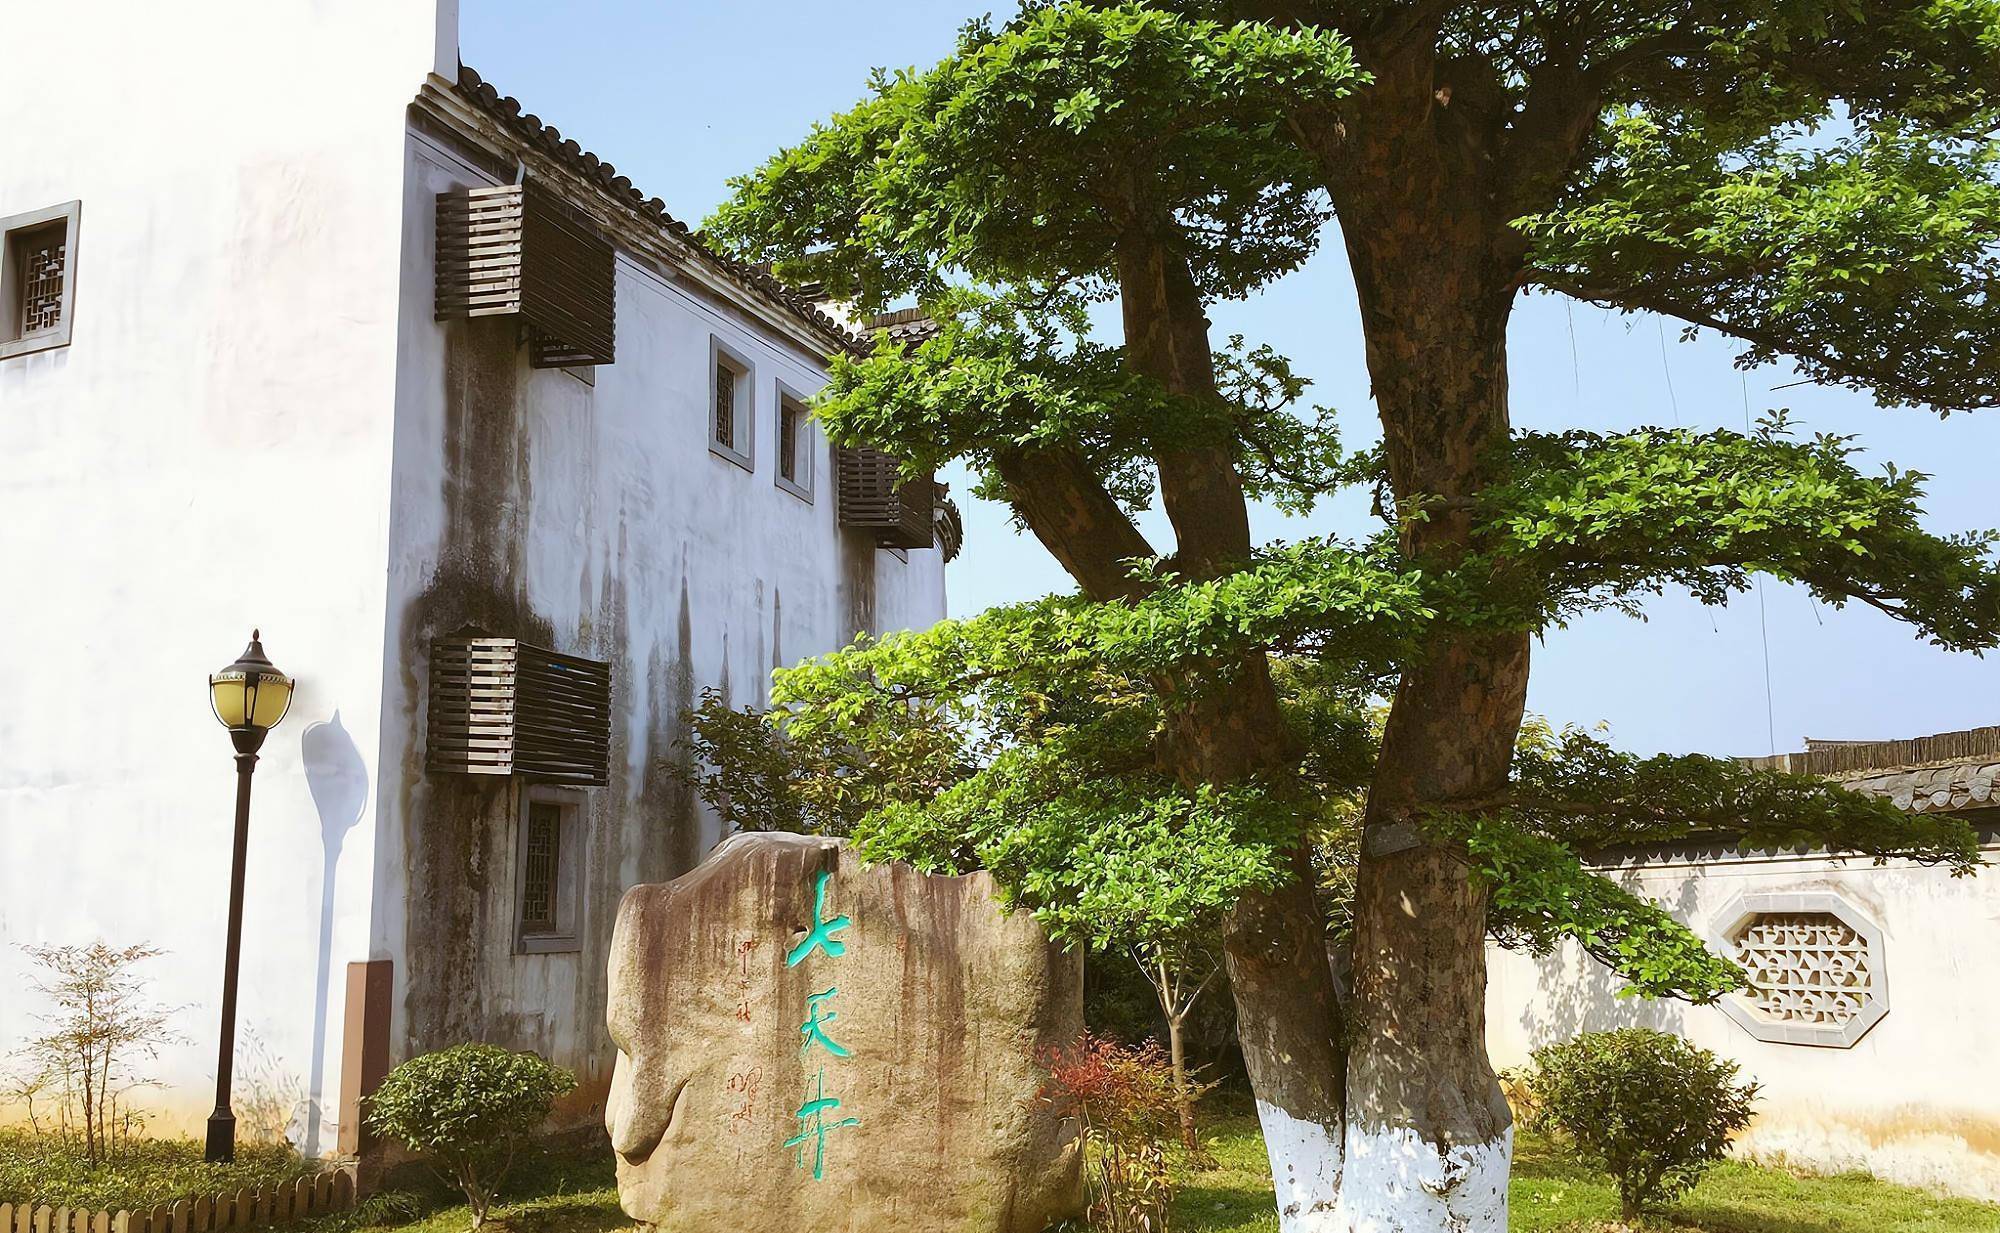 千年古村唐模，中国历史文化名村，被誉为“中国水口园林第一村”